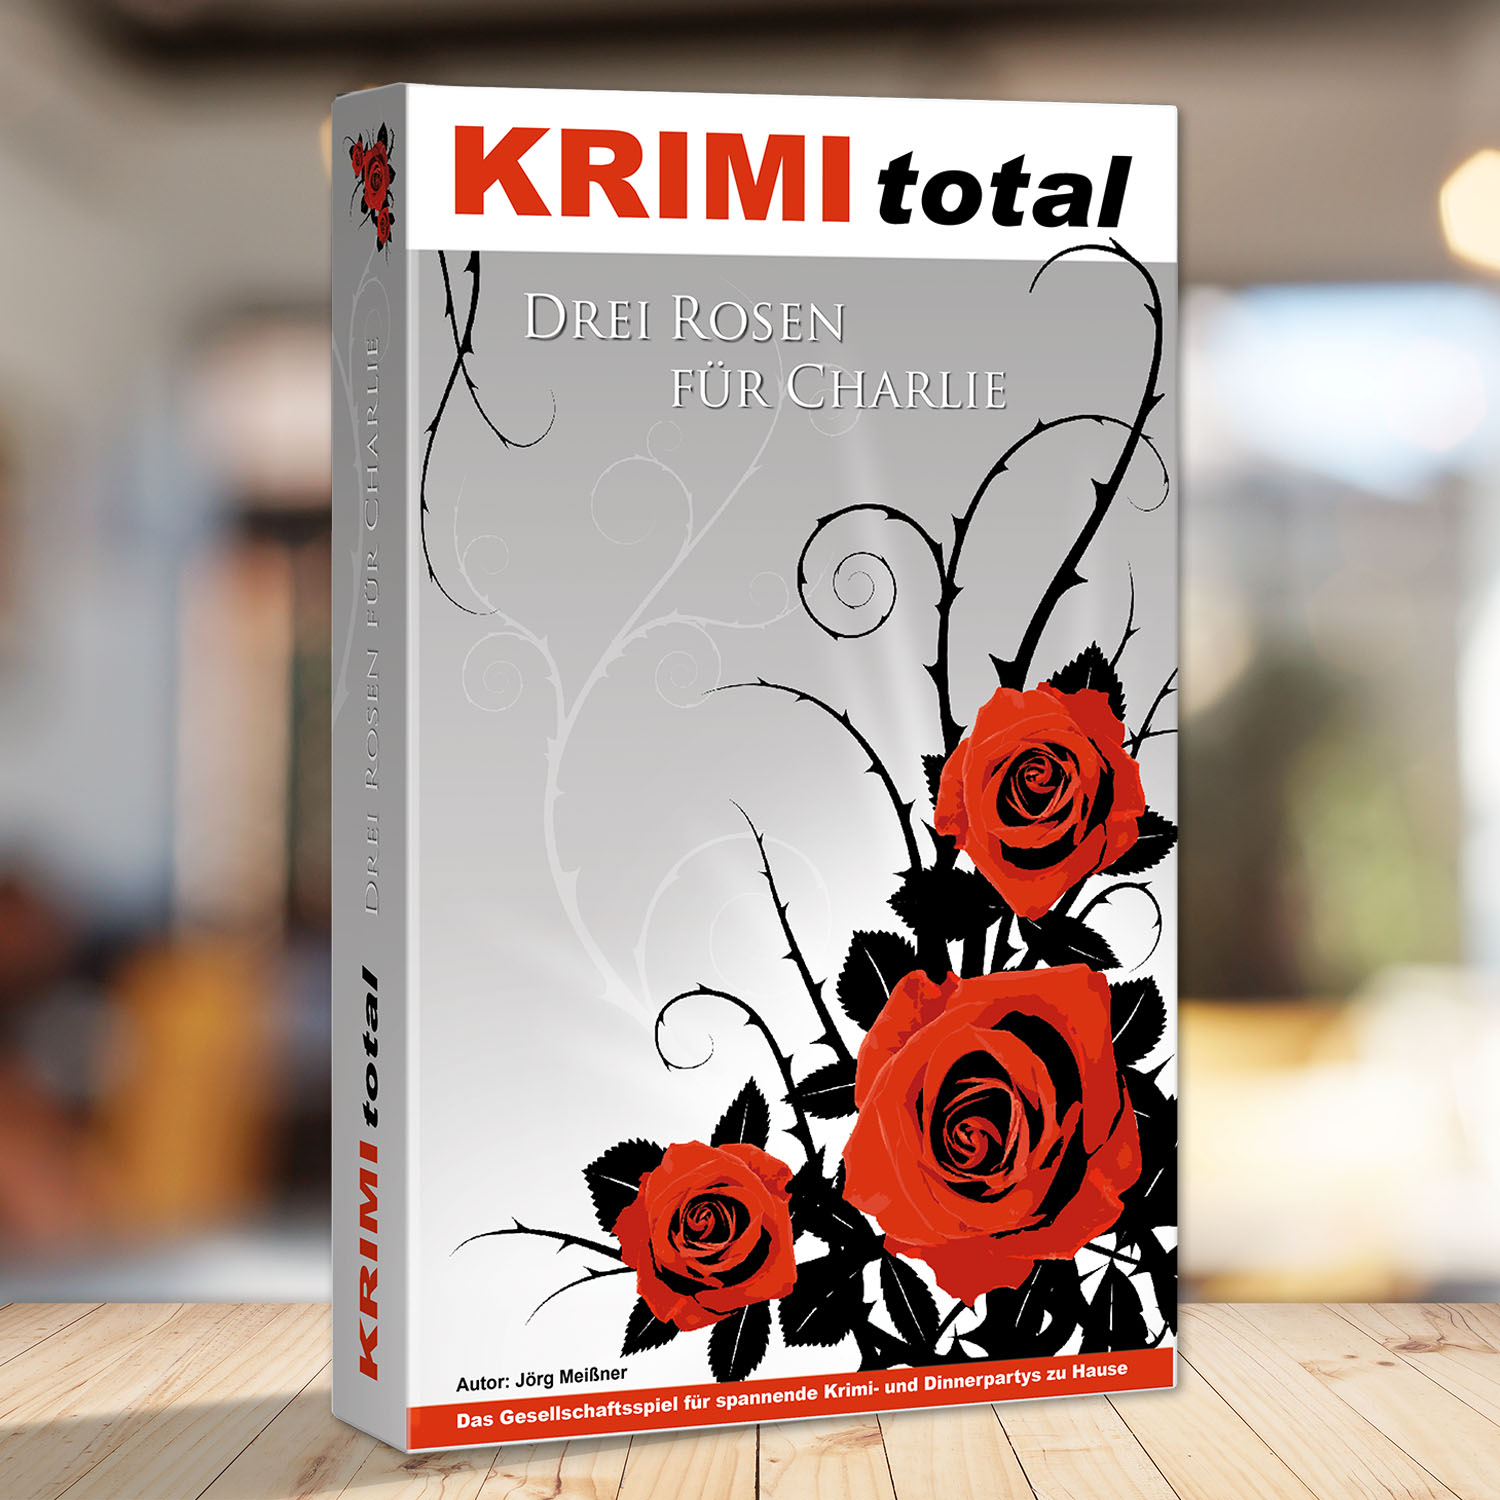 Abbildung eines Spielkartons des Krimidinner Spiels "KRIMI total - Drei Rosen für Charlie"